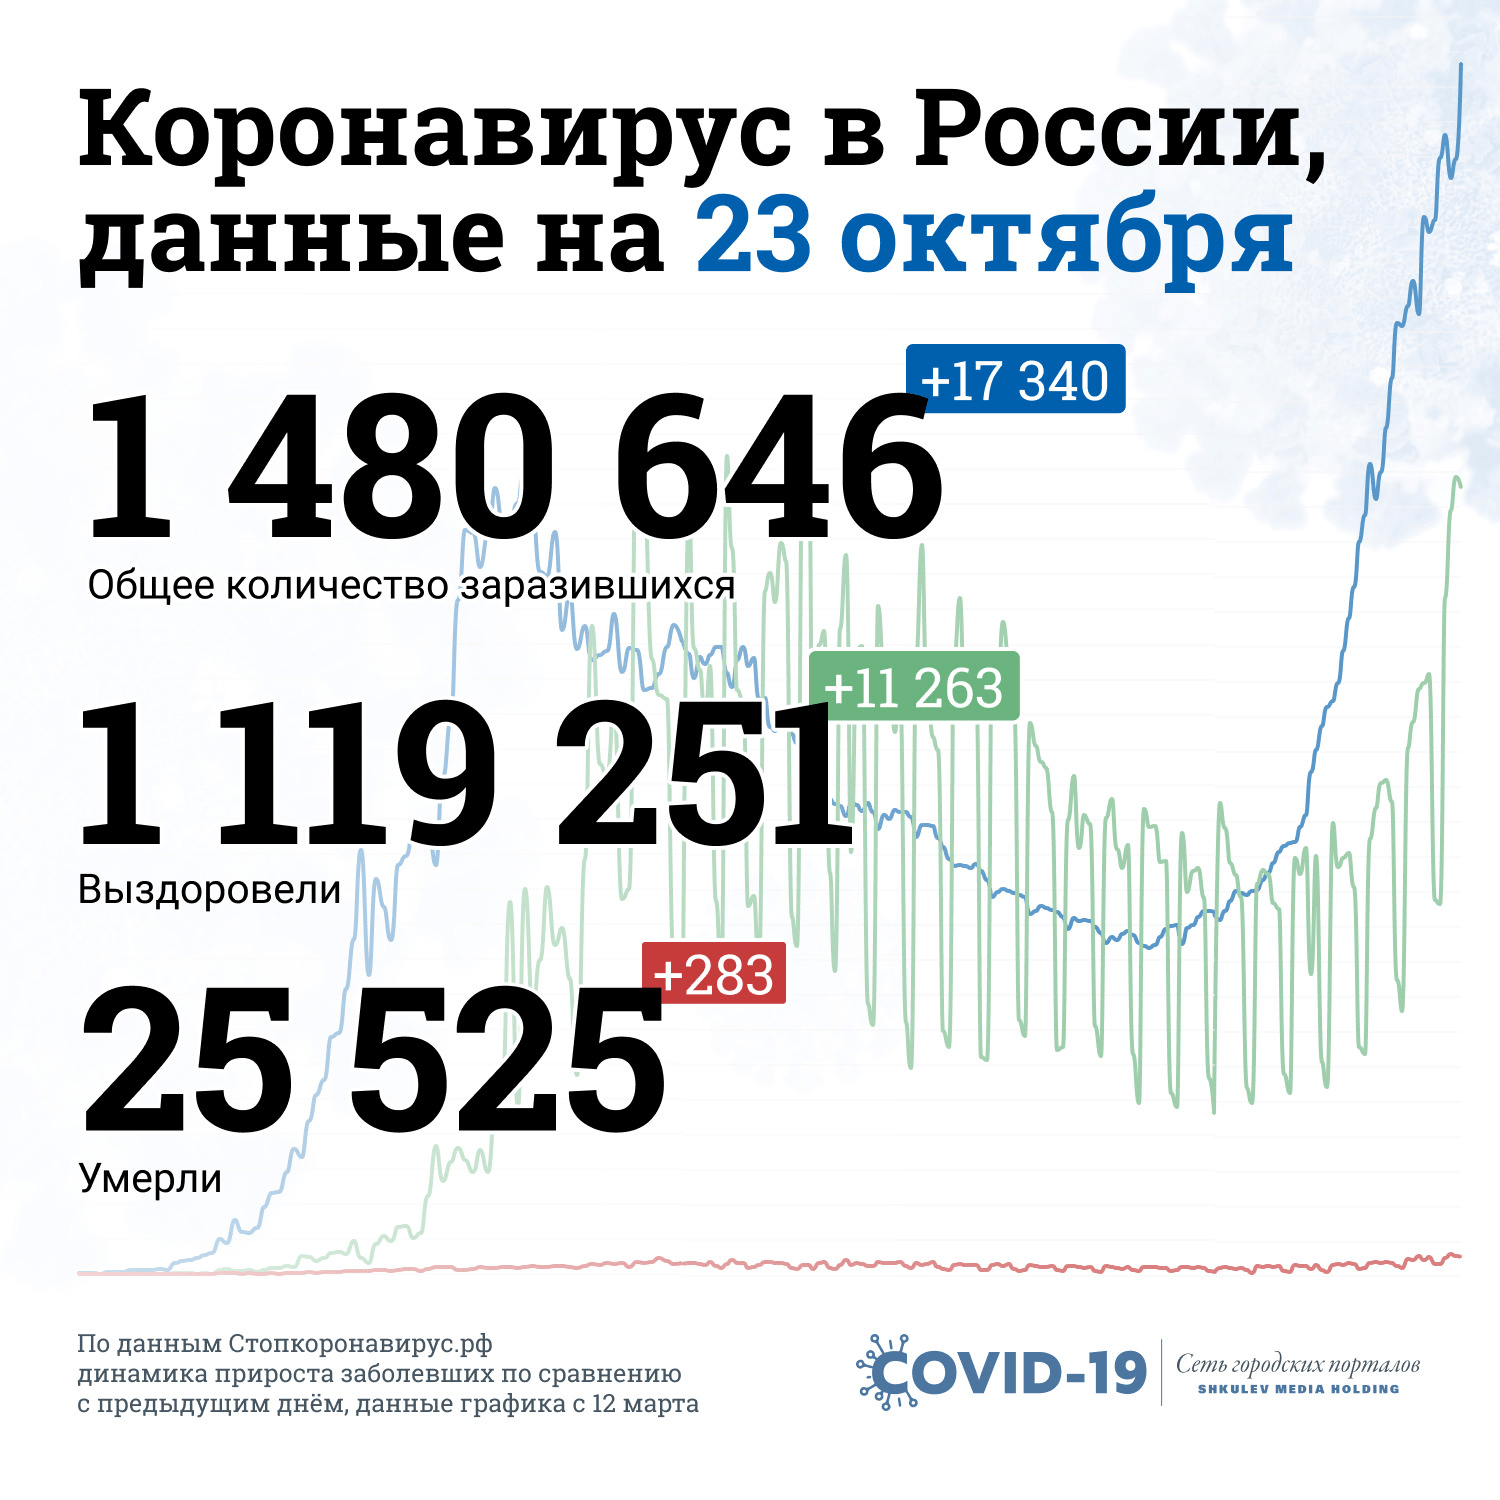 Вот так на сегодняшний день выглядит статистика по заболеваемости ковидом в России